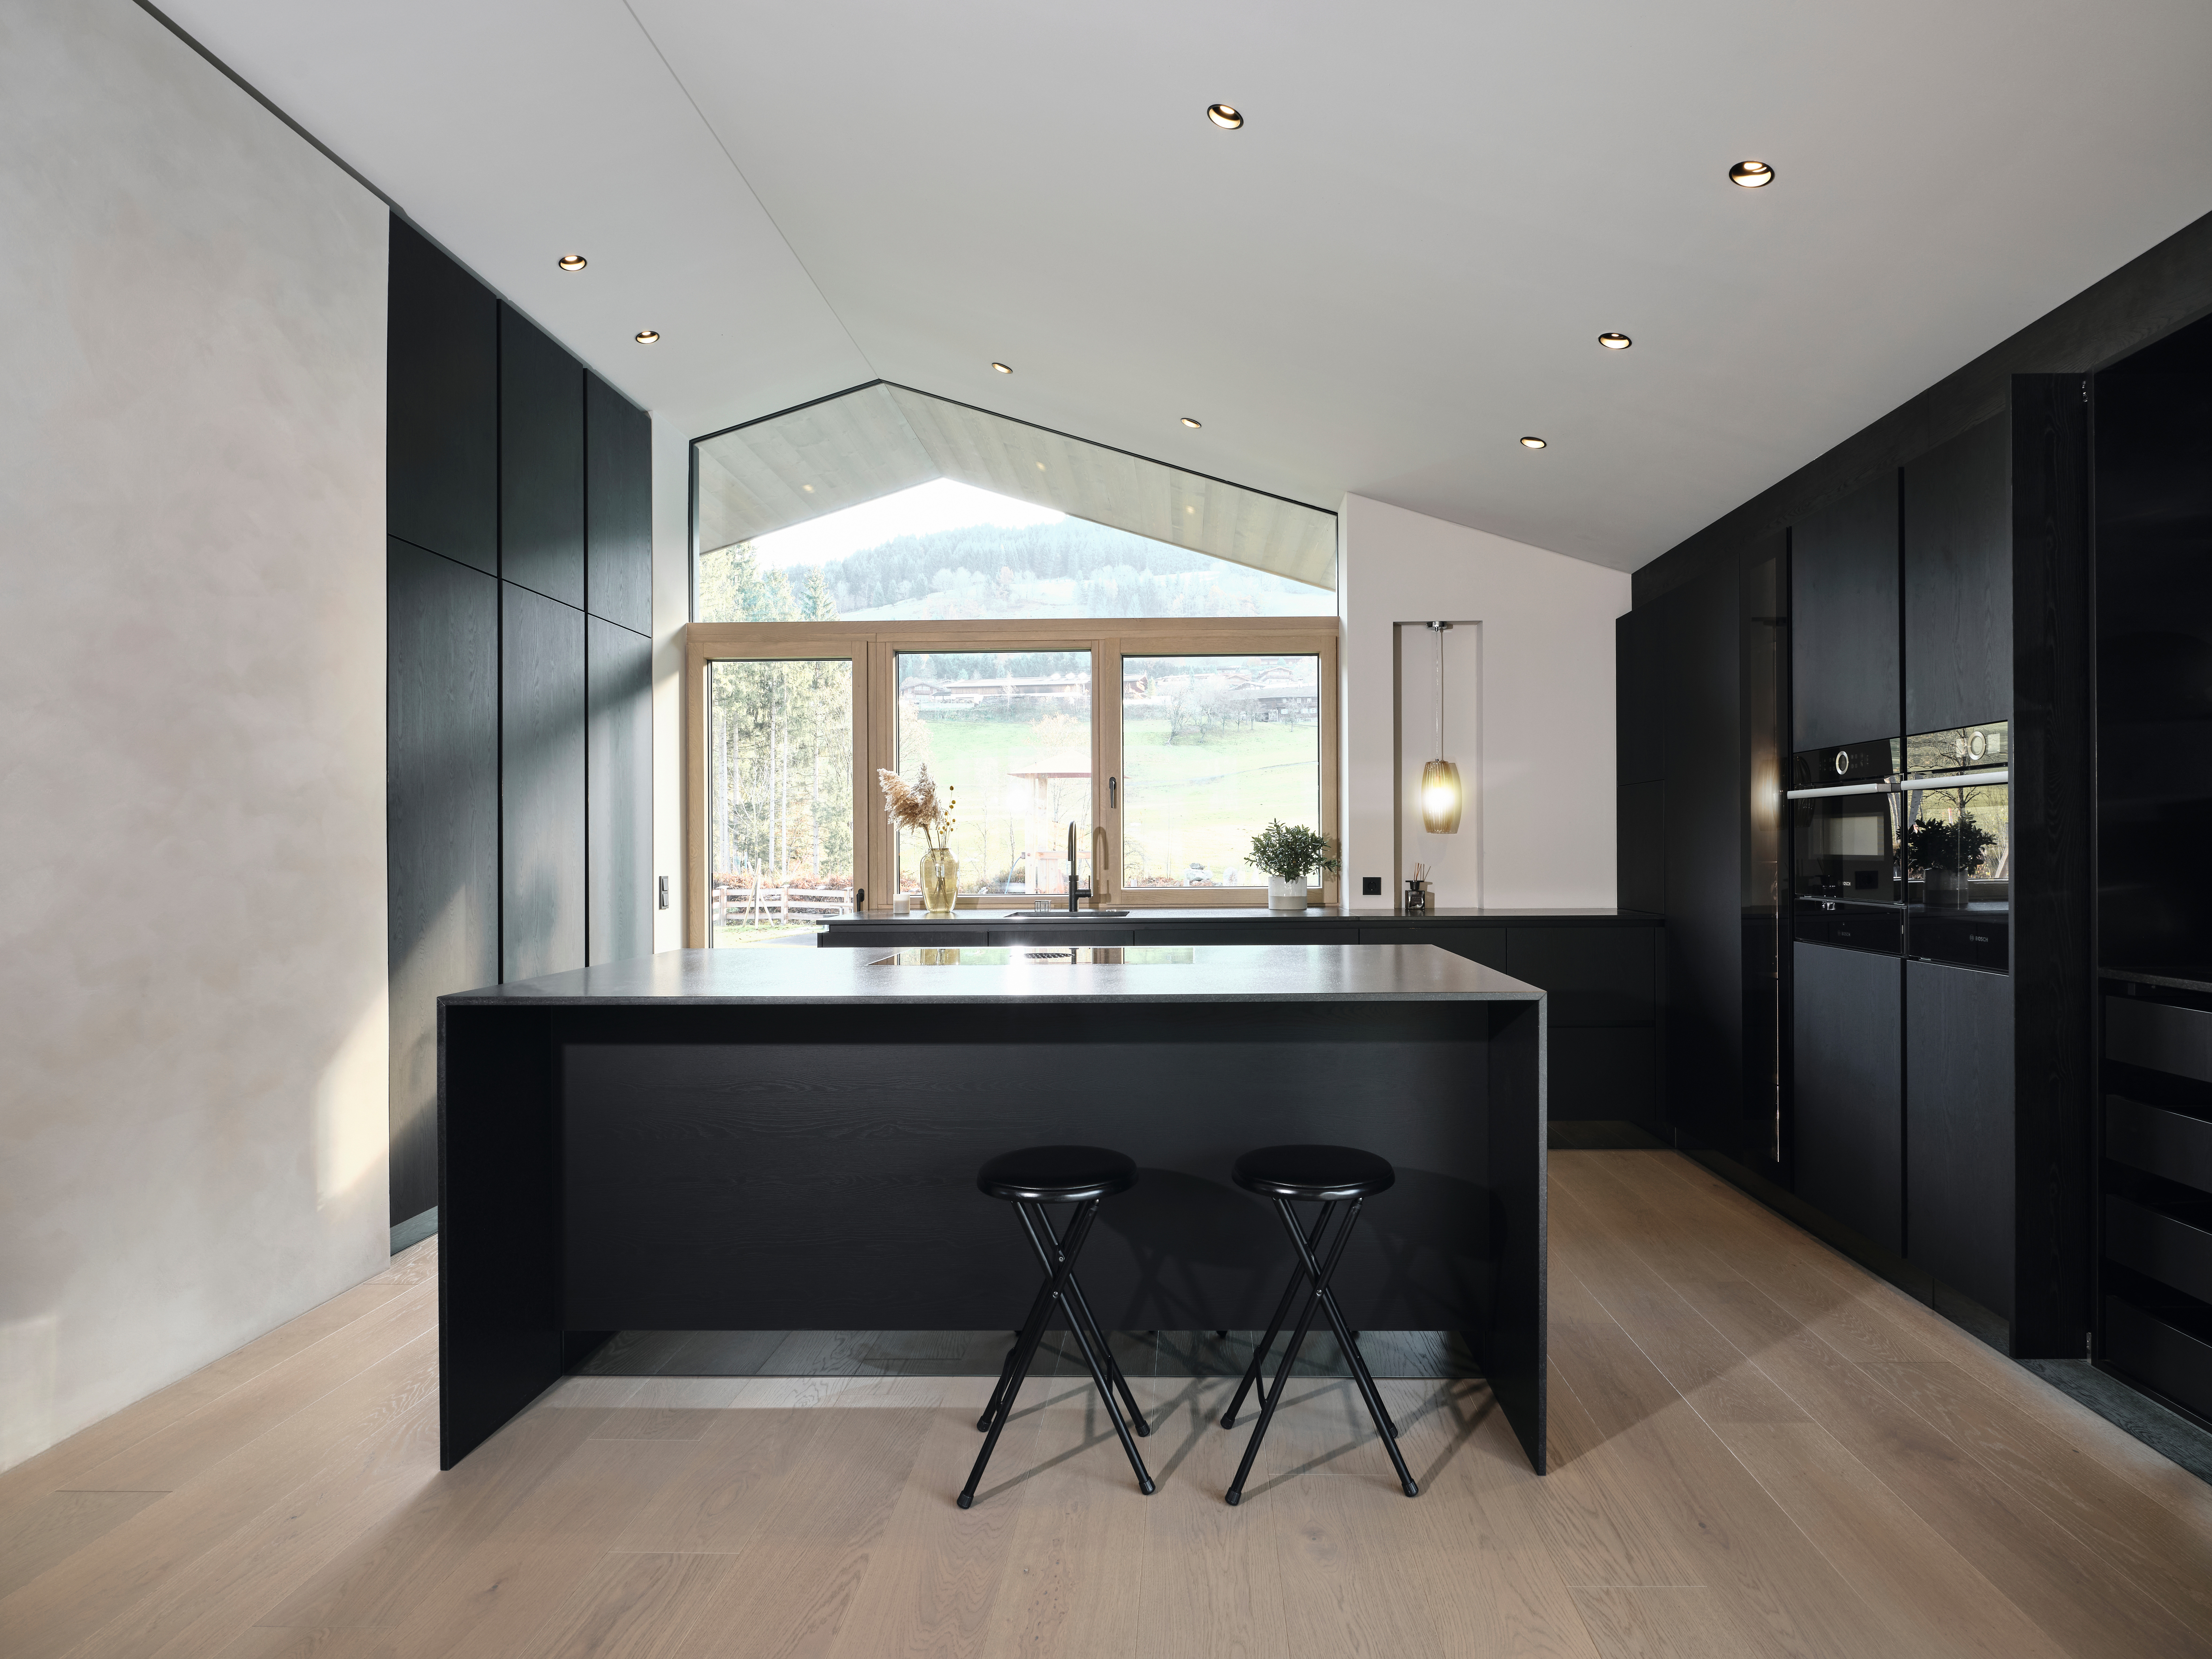 A PerfectSense Feelwood U999 TM28 Fekete dekor különösen alacsony fényvisszaverő hatása természetes megjelenésű eleganciát kölcsönöz ennek a konyhának.